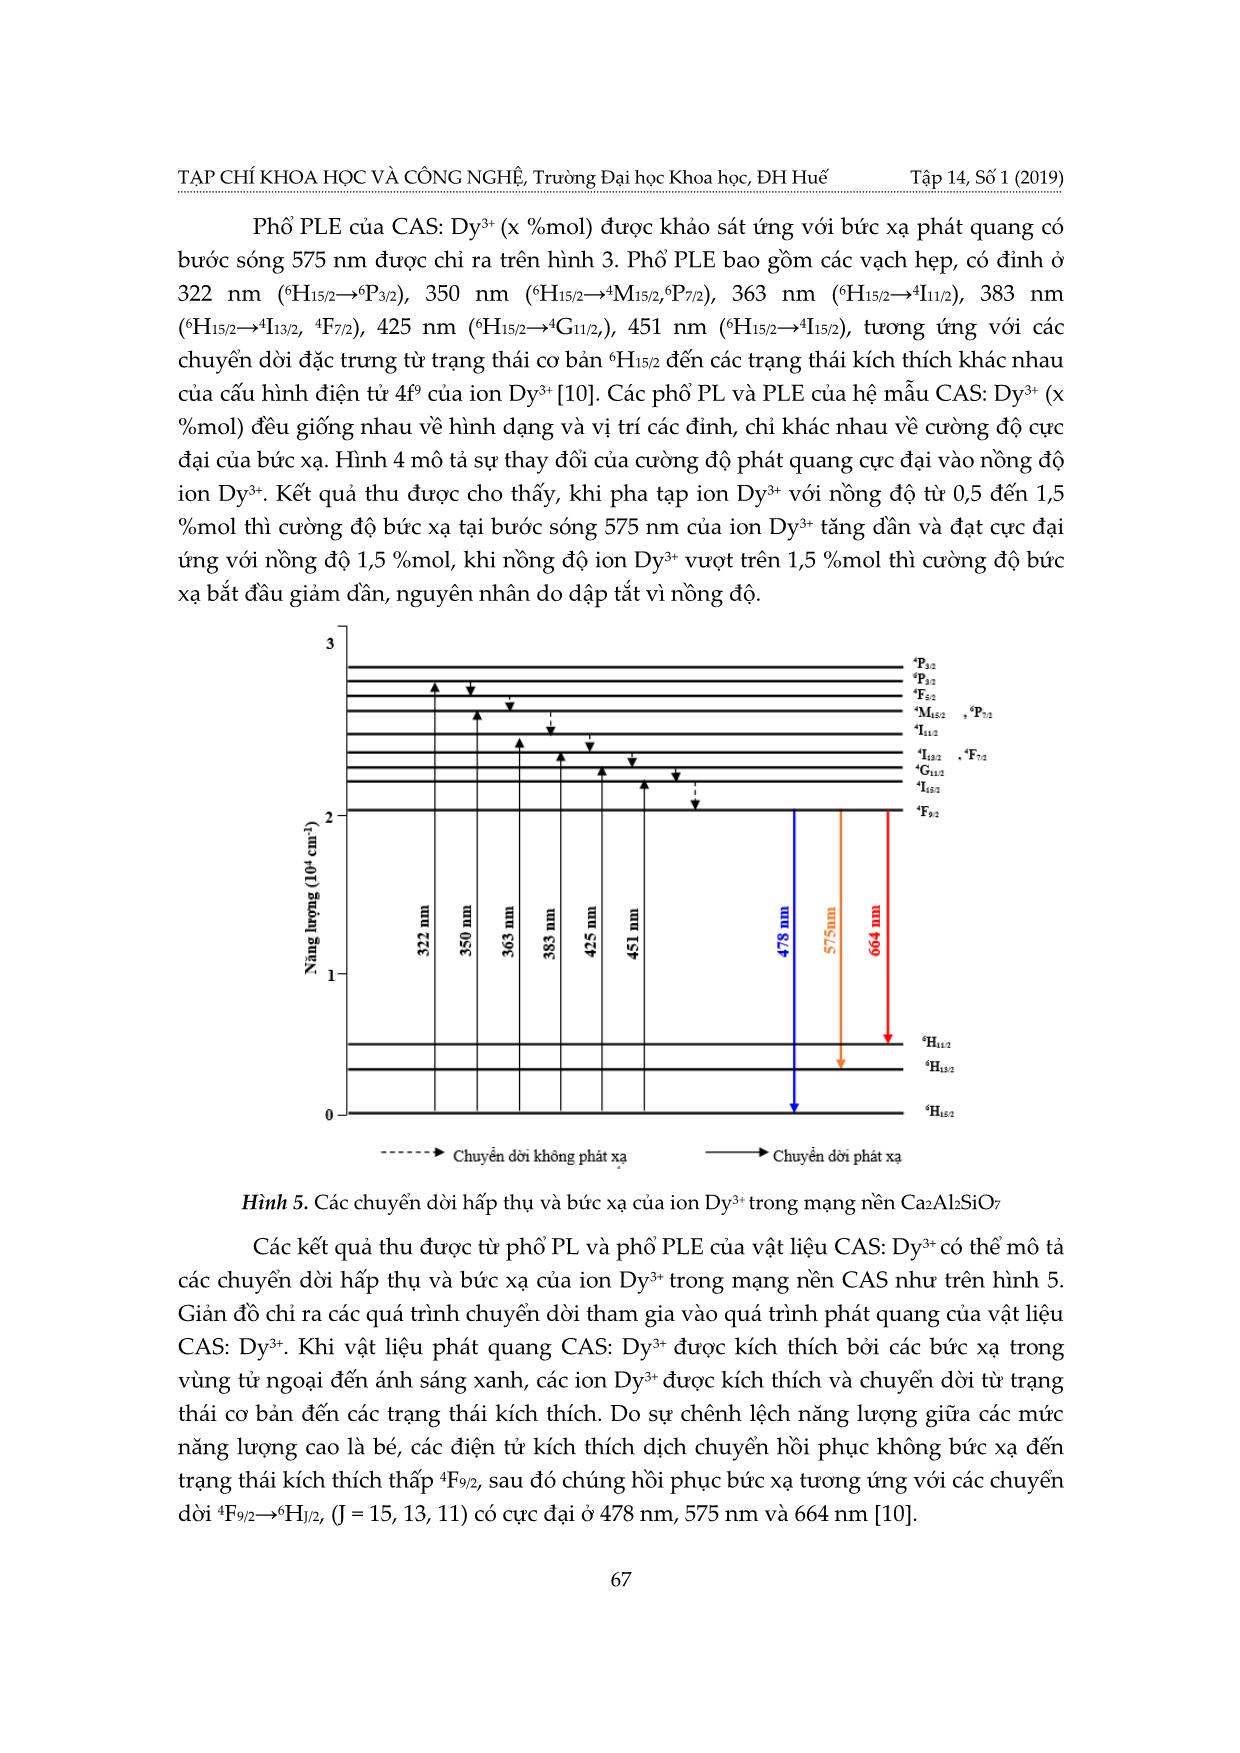 Cơ chế phát quang của ion Dy³+ trong mạng nền Ca₂Al₂SiO⁷ trang 5